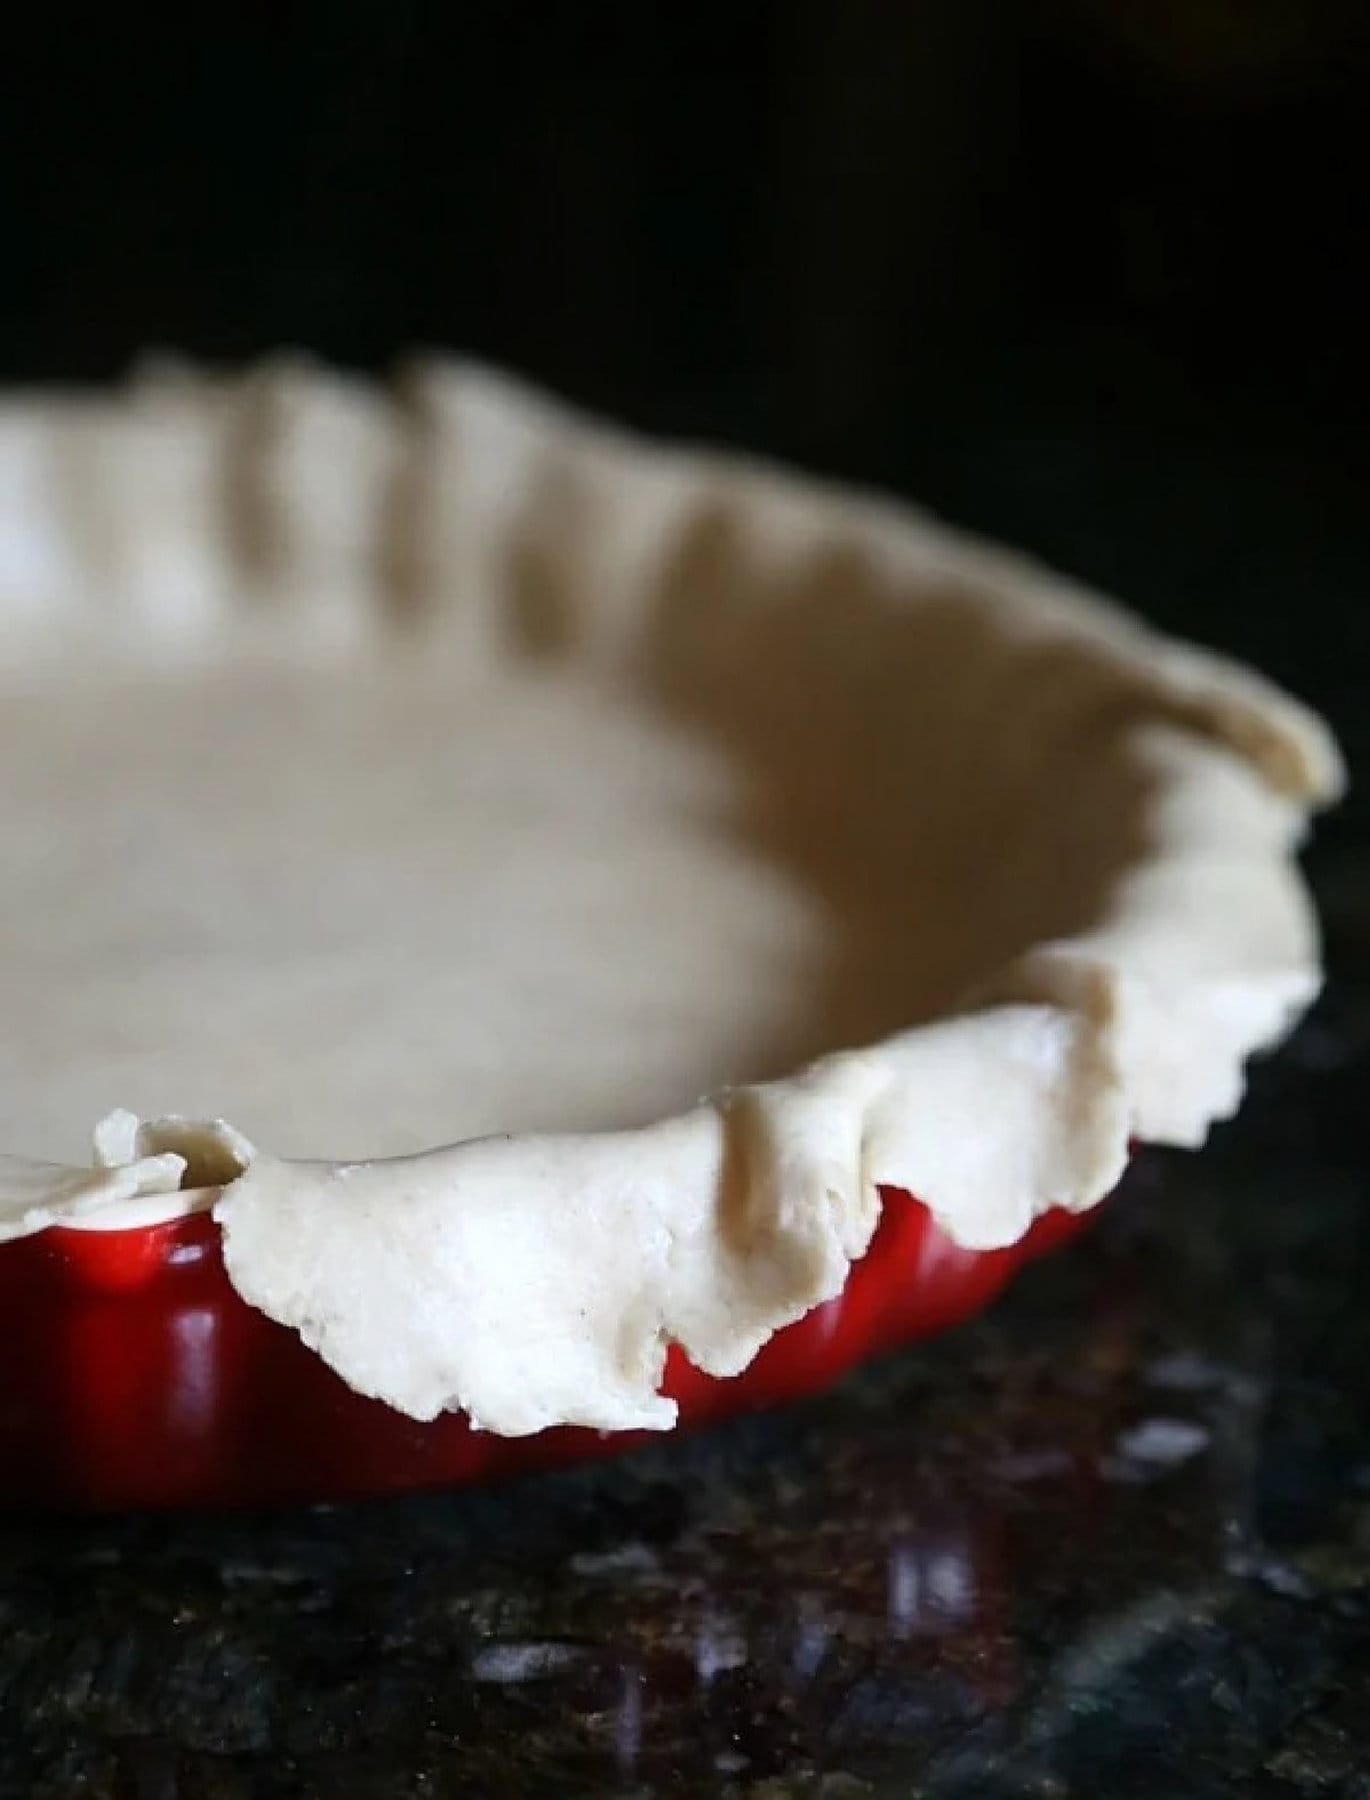 Pie crust in a dish